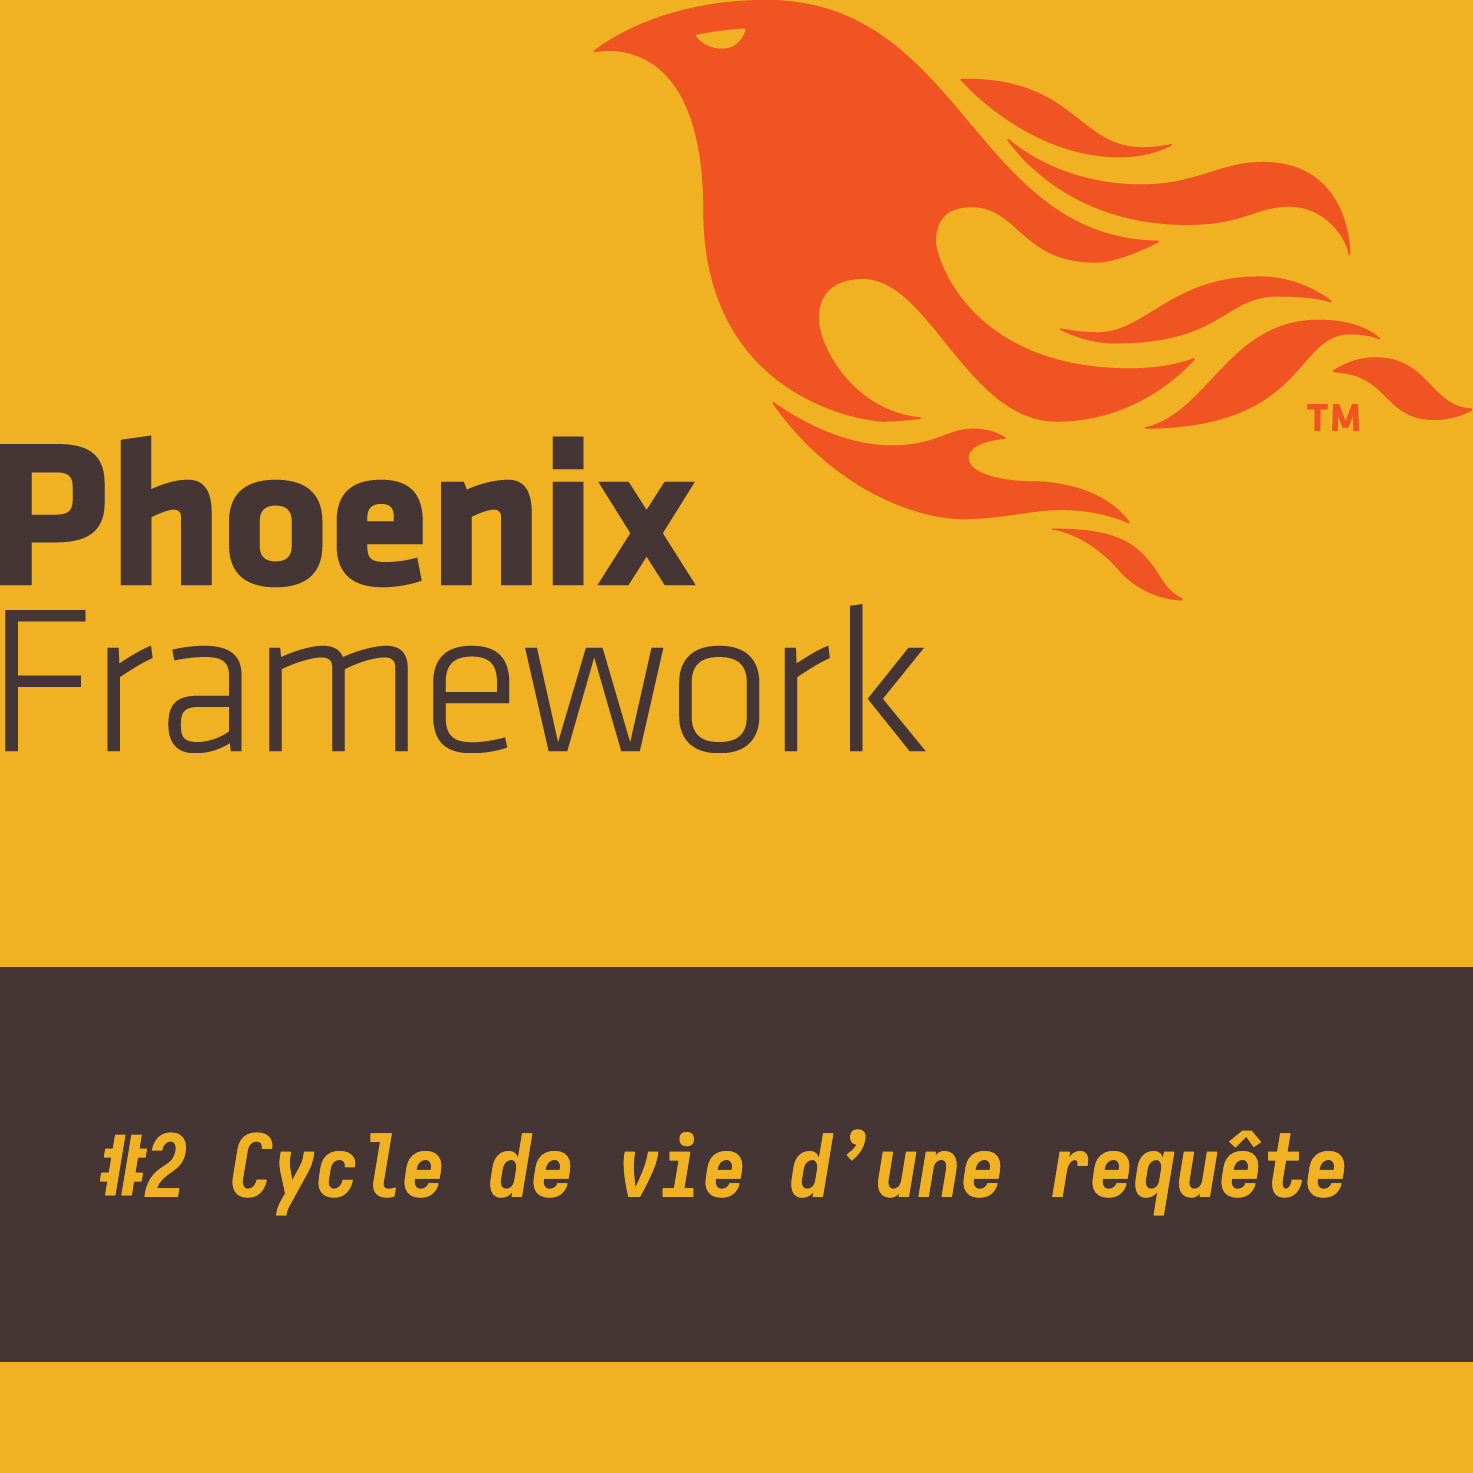 Phoenix Framework #2 Cycle de vie d'une requête